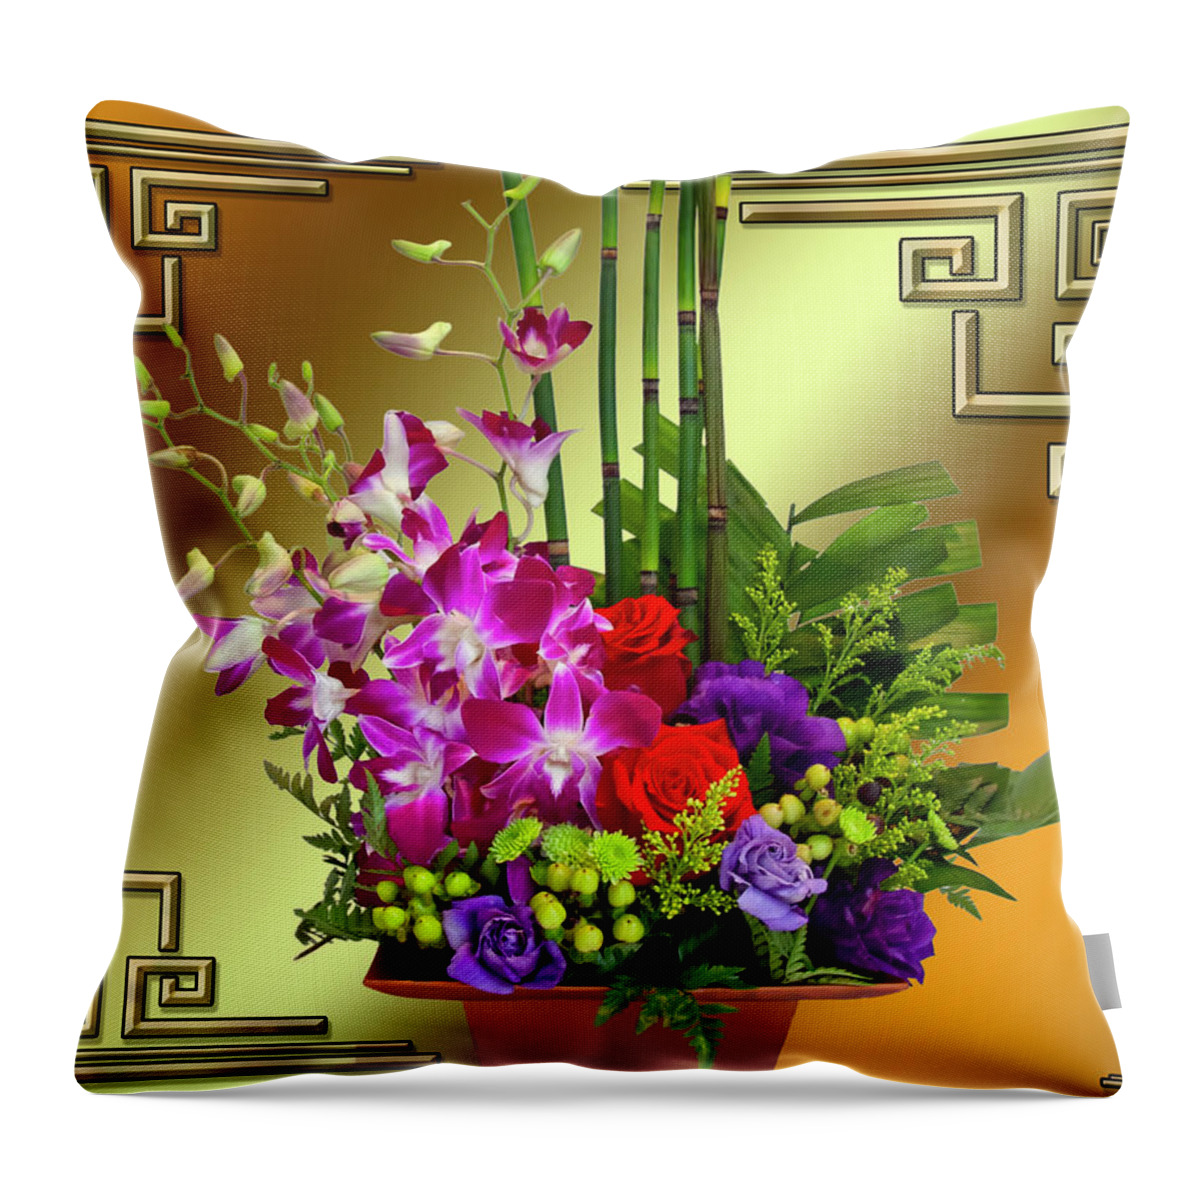 Art Deco Floral Arrangement Throw Pillow featuring the digital art Art Deco Floral Arrangement by Chuck Staley